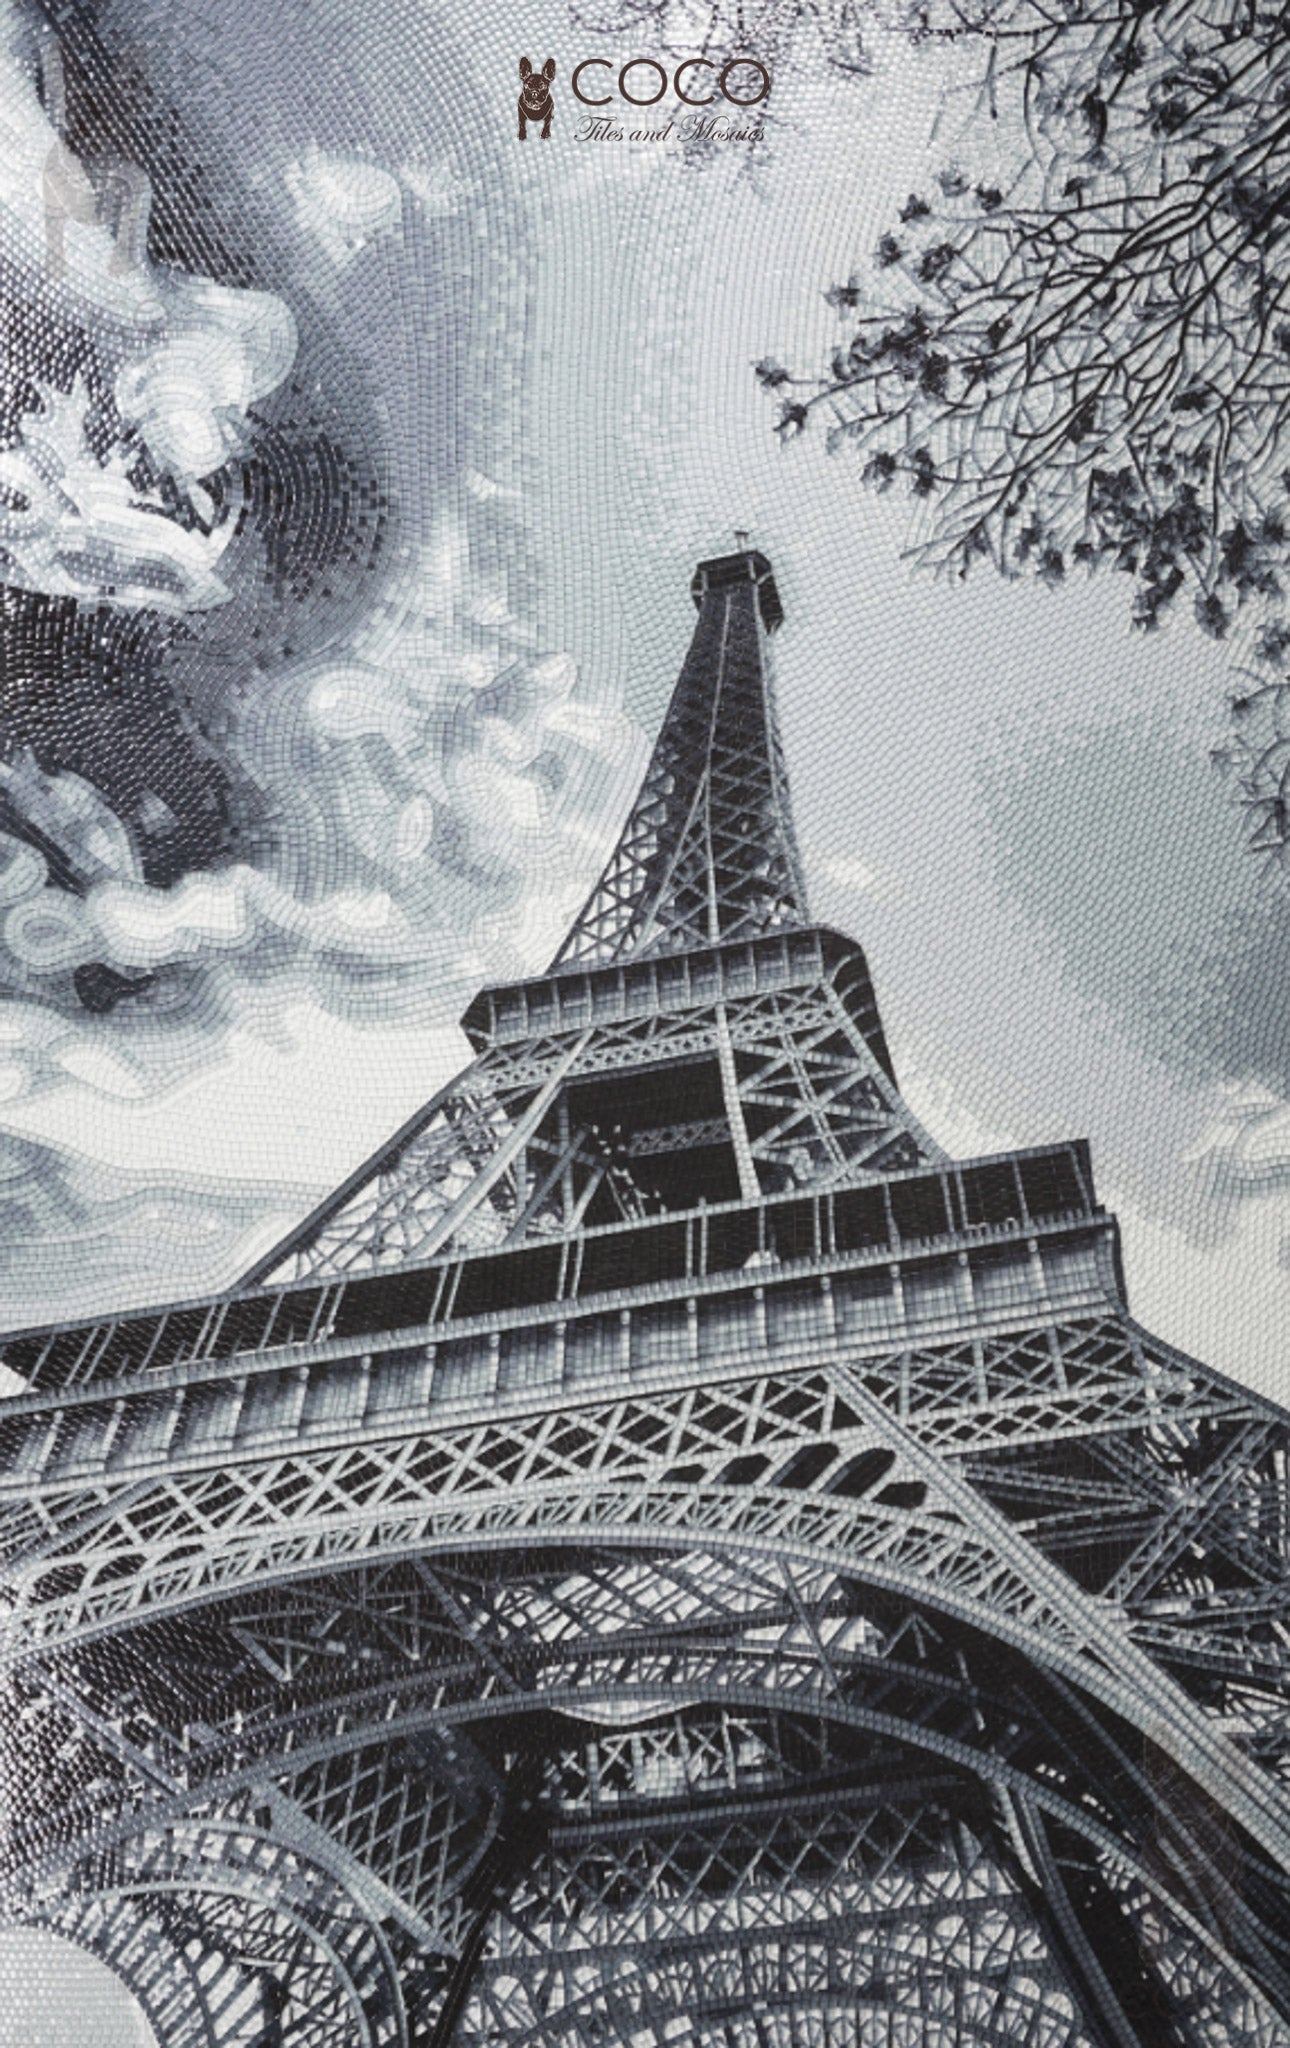 Artistic Mosaic - Eiffel Tower